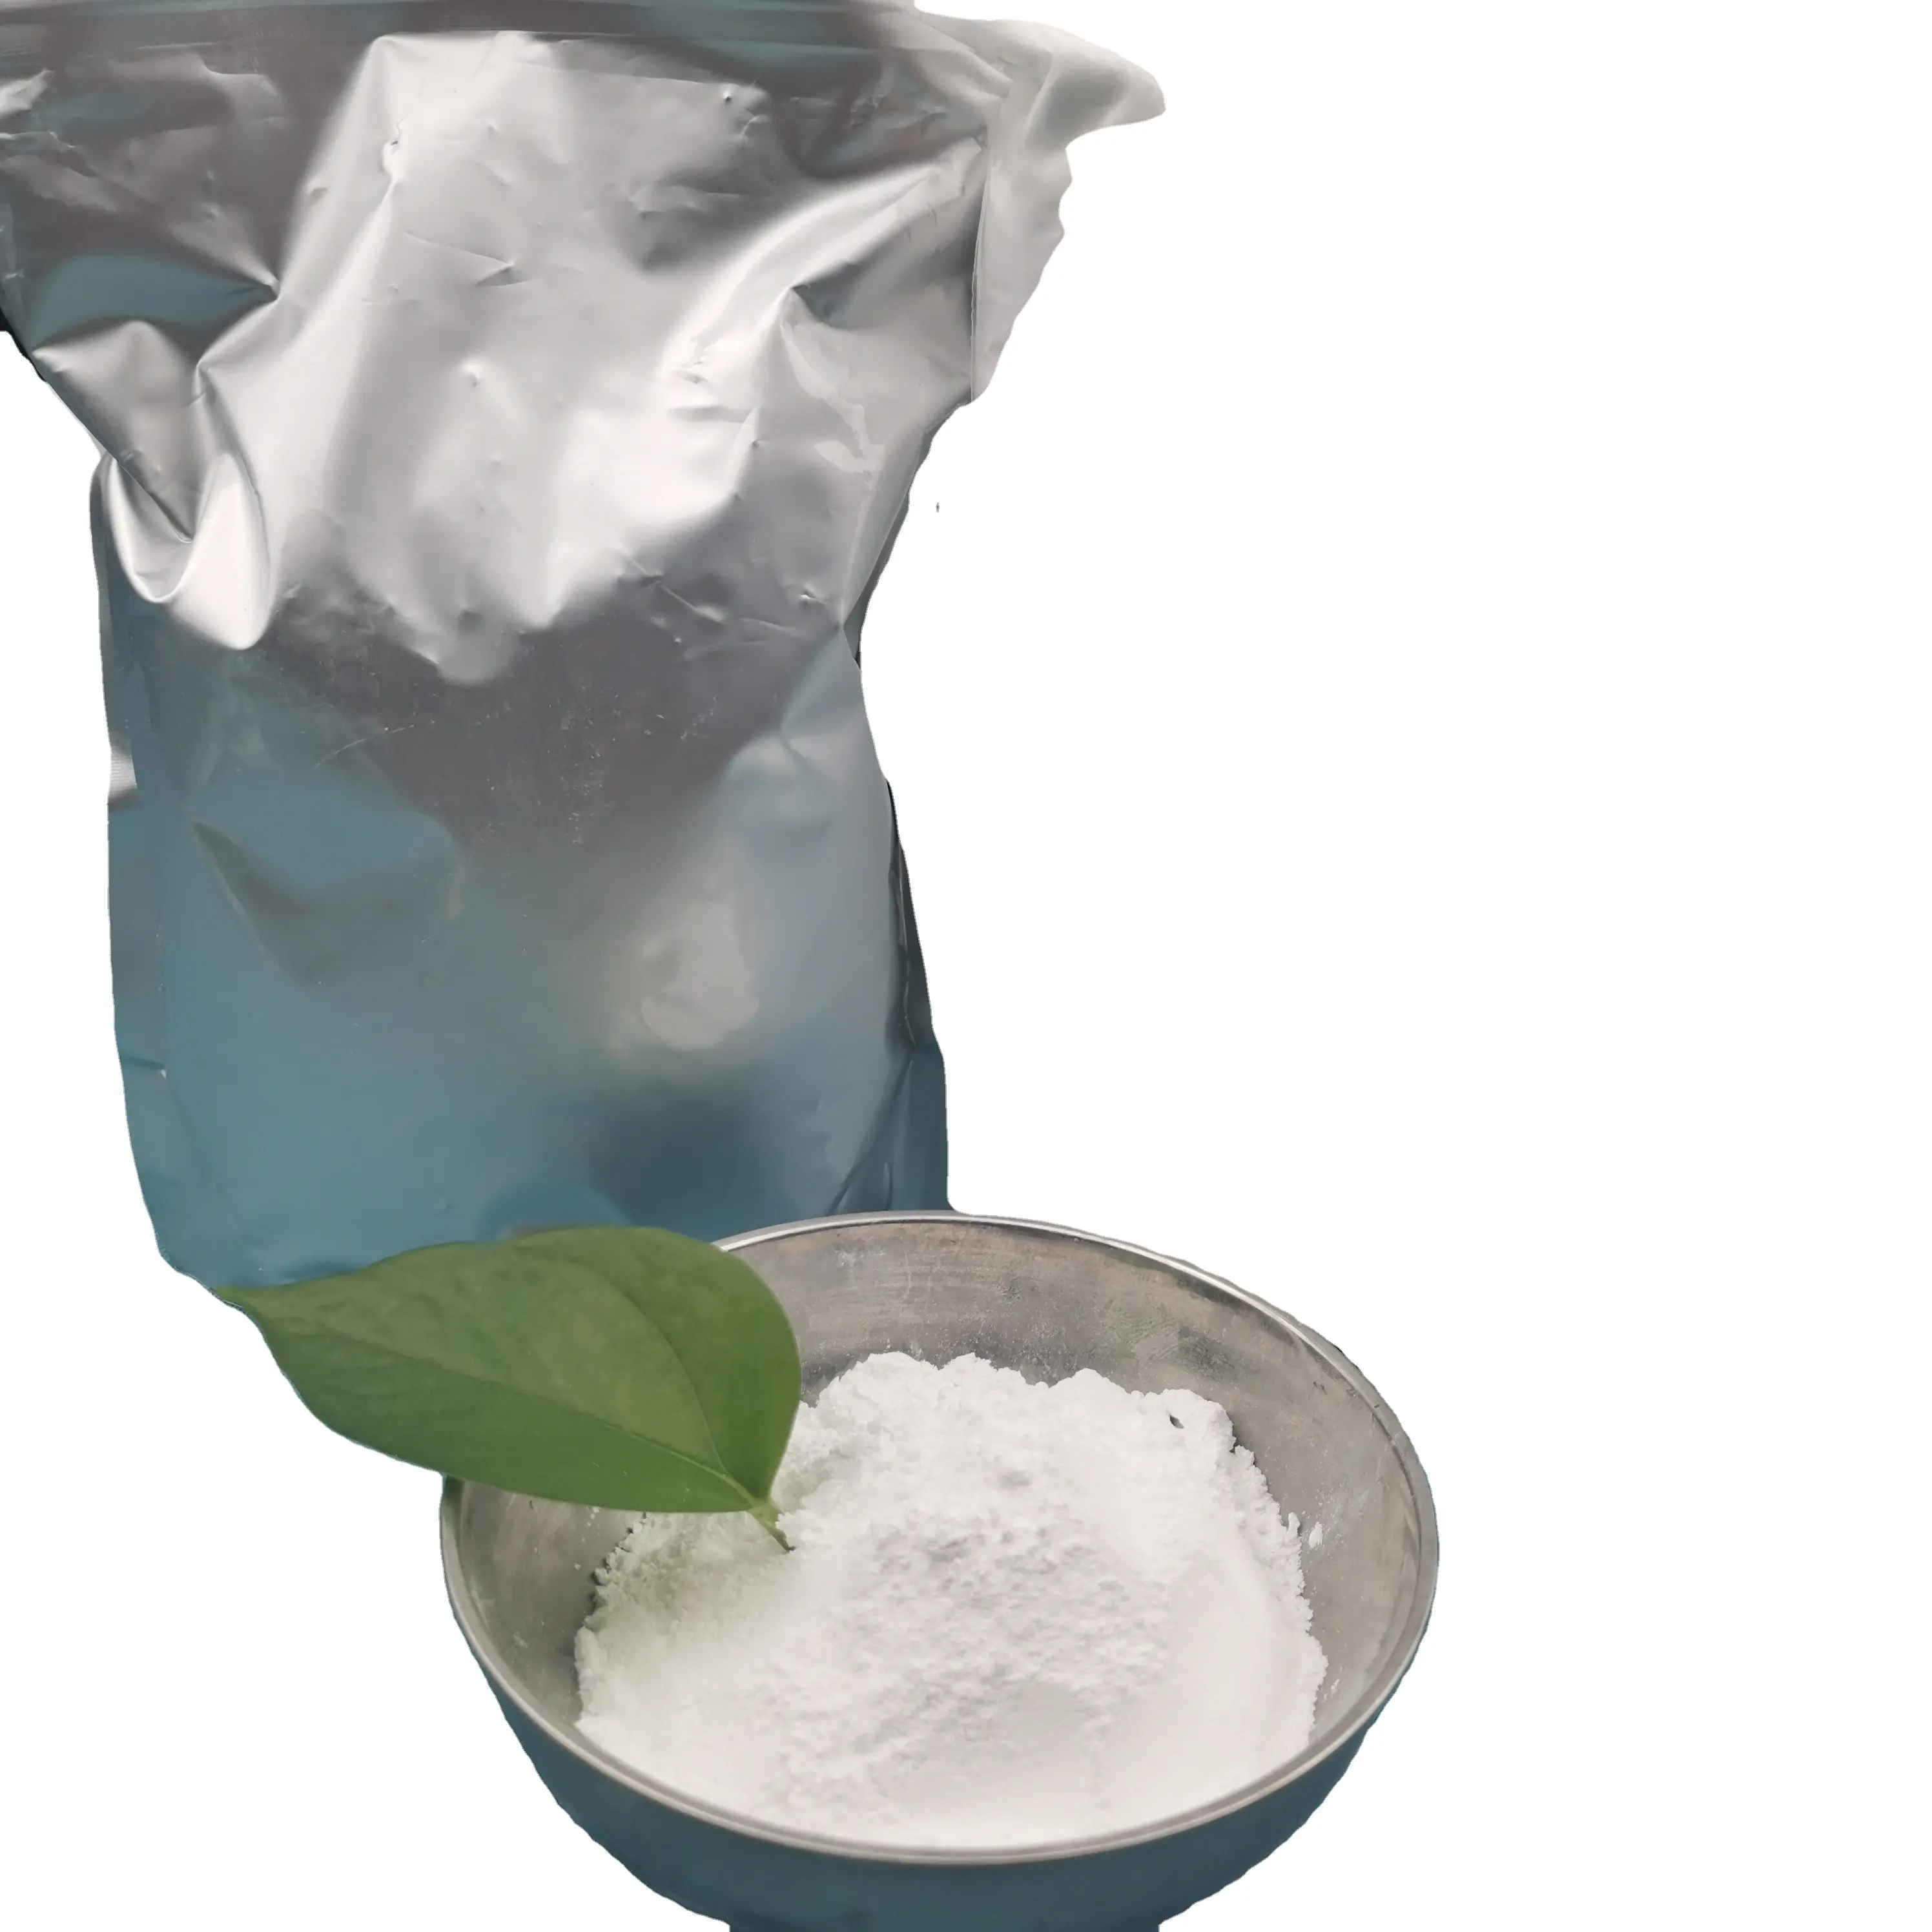 Venta al por mayor polvo de Monohidrato de Creatina a granel CAS 6020-87-7 suplemento deportivo